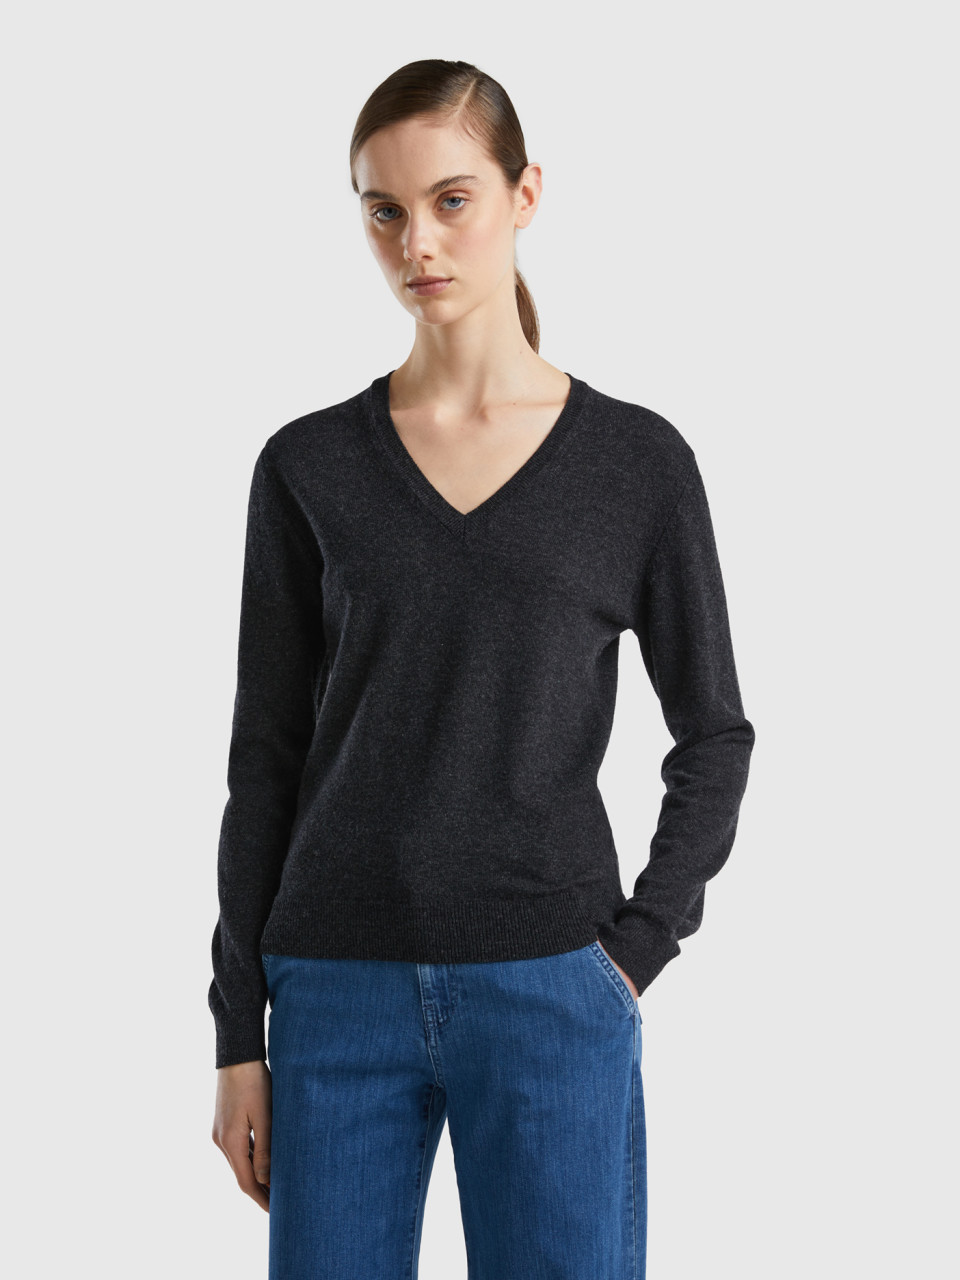 Benetton, Charcoal Gray V-neck Sweater In Pure Merino Wool, Dark Gray, Women